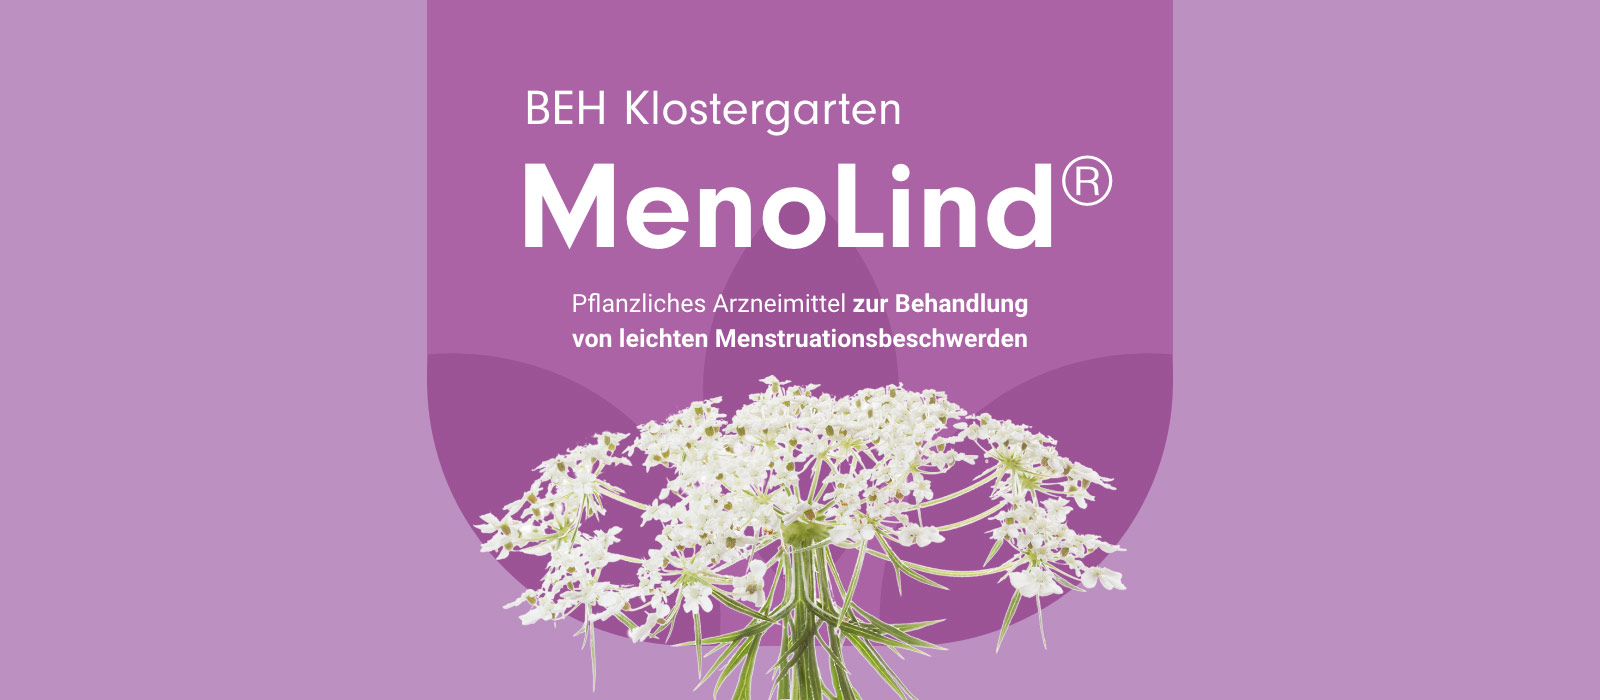 BEH Klosterkarten MenoLind® - Pflanzliches Arzneimittel zur Behandlung
von leichten Menstruationsbeschwerden